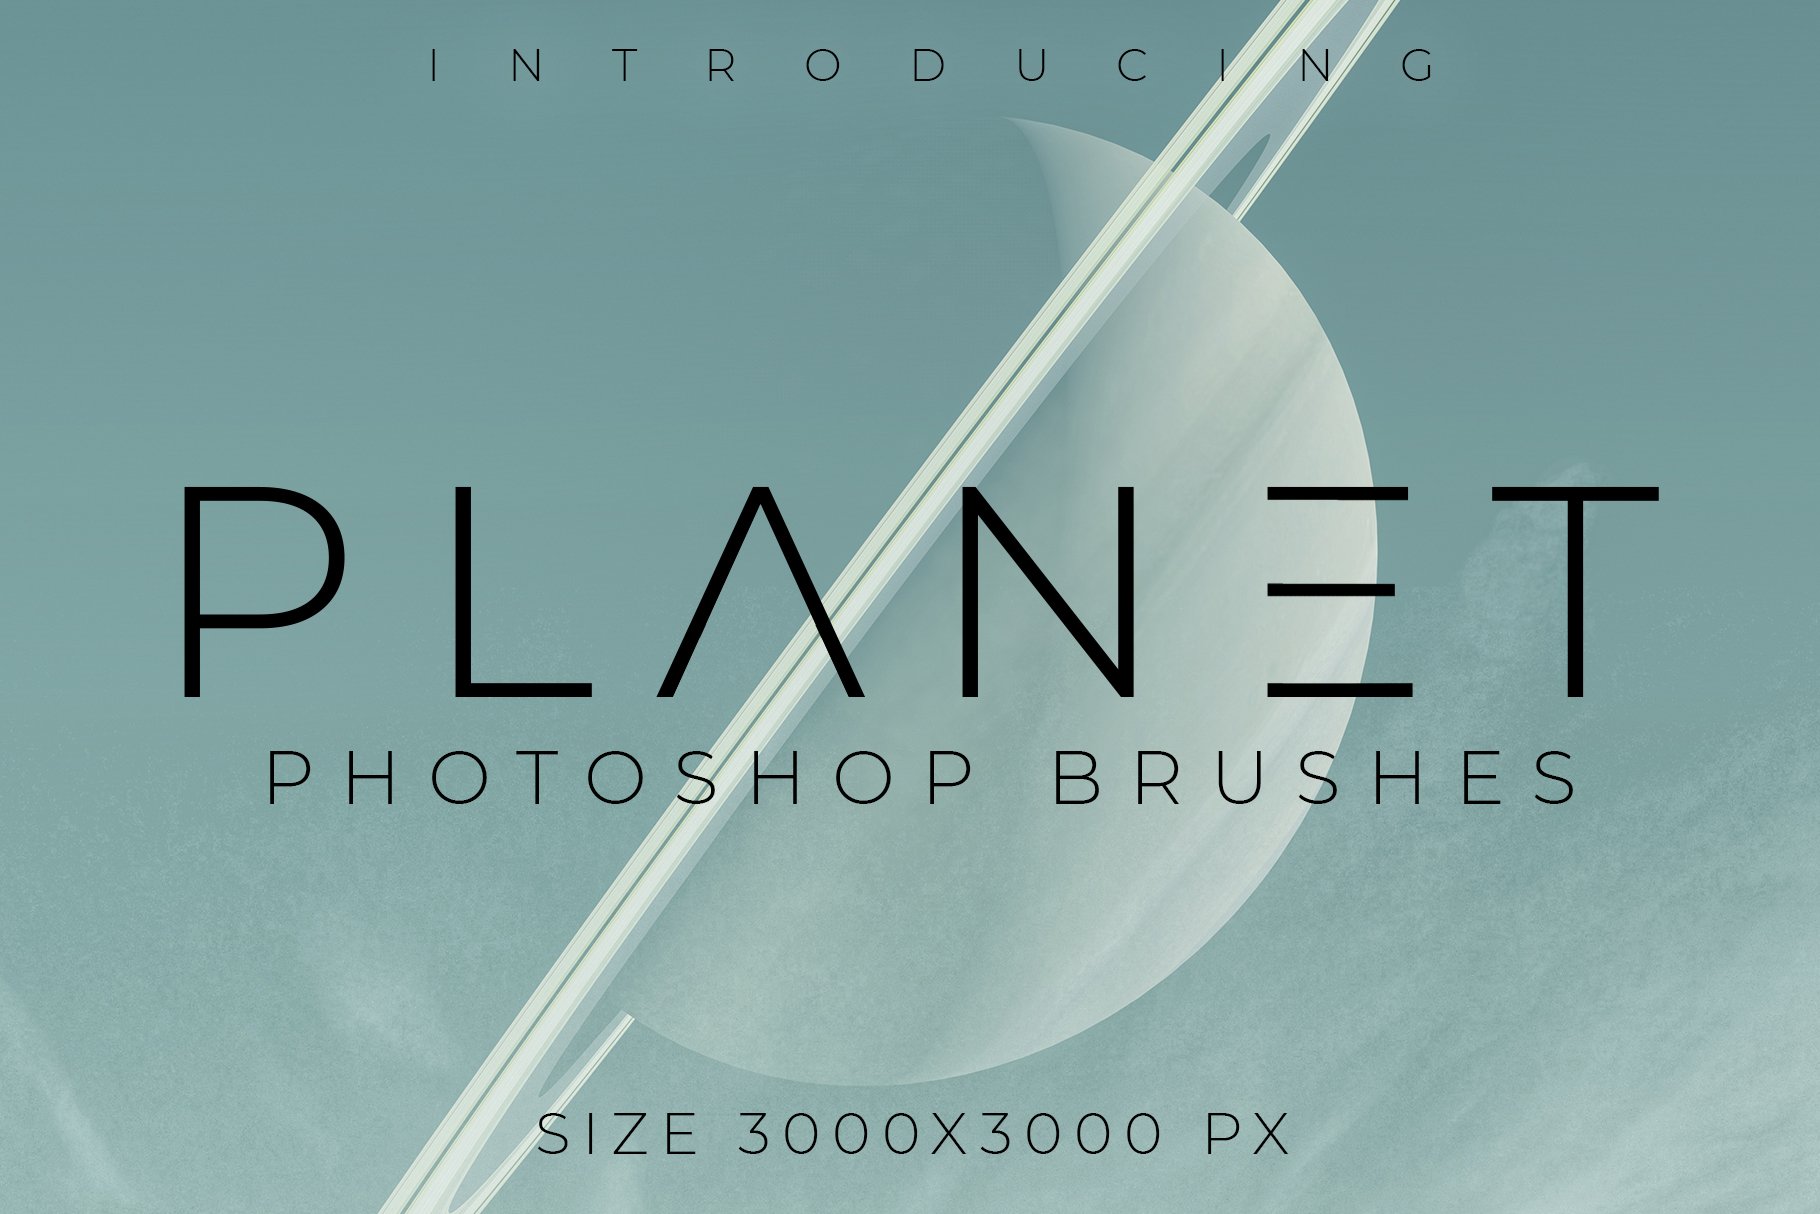 Planet Photoshop Brush Setcover image.